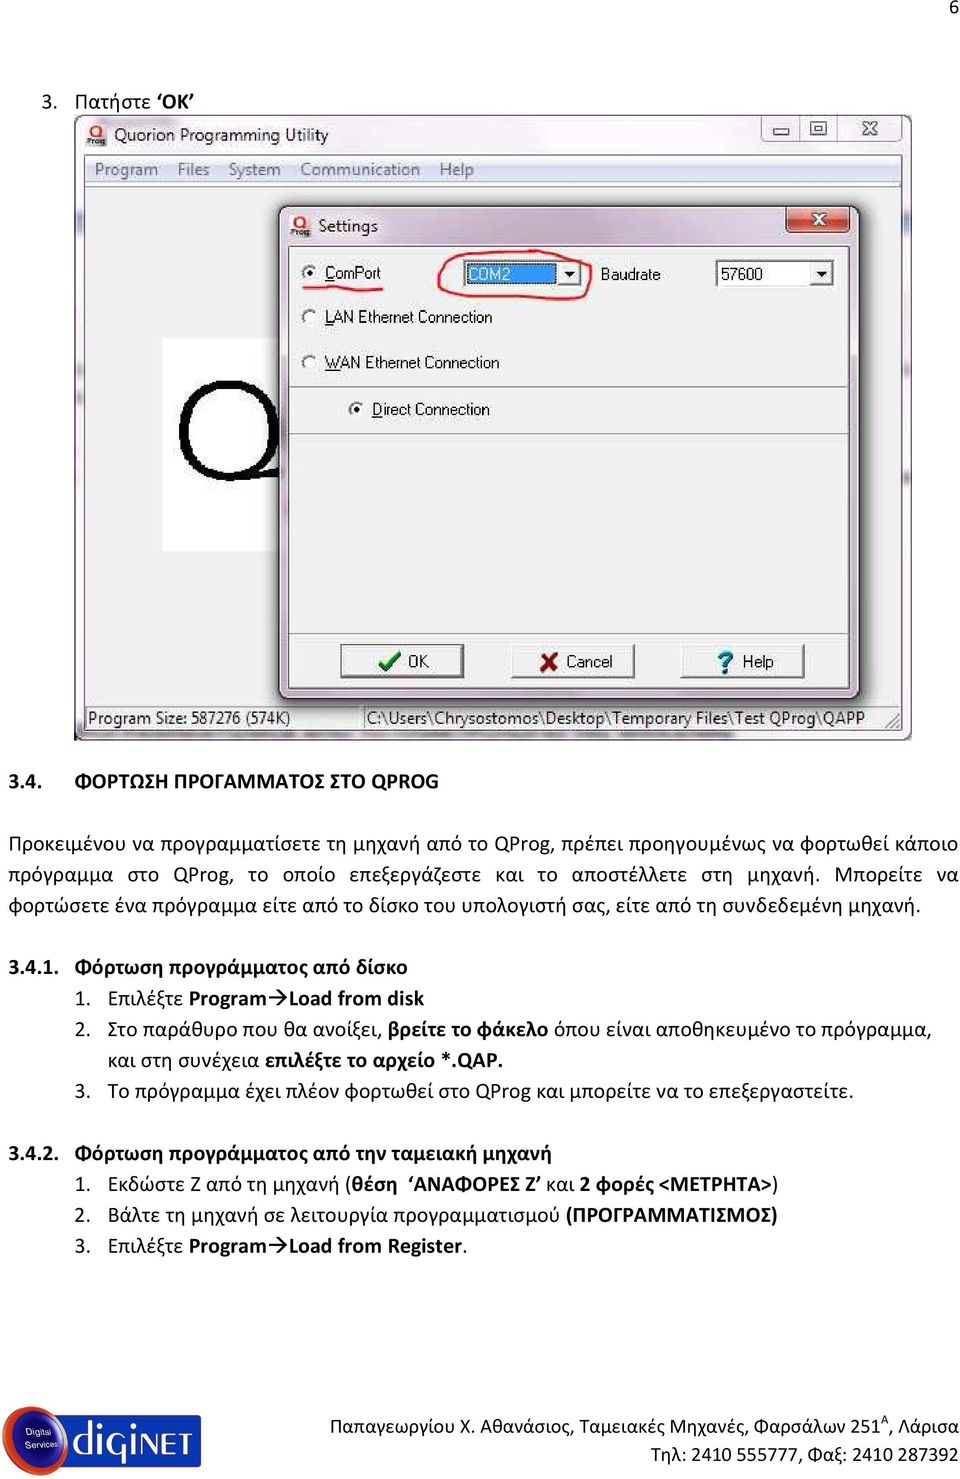 Μπορείτε να φορτώσετε ένα πρόγραμμα είτε από το δίσκο του υπολογιστή σας, είτε από τη συνδεδεμένη μηχανή. 3.4.1. Φόρτωση προγράμματος από δίσκο 1. Επιλέξτε Program Load from disk 2.